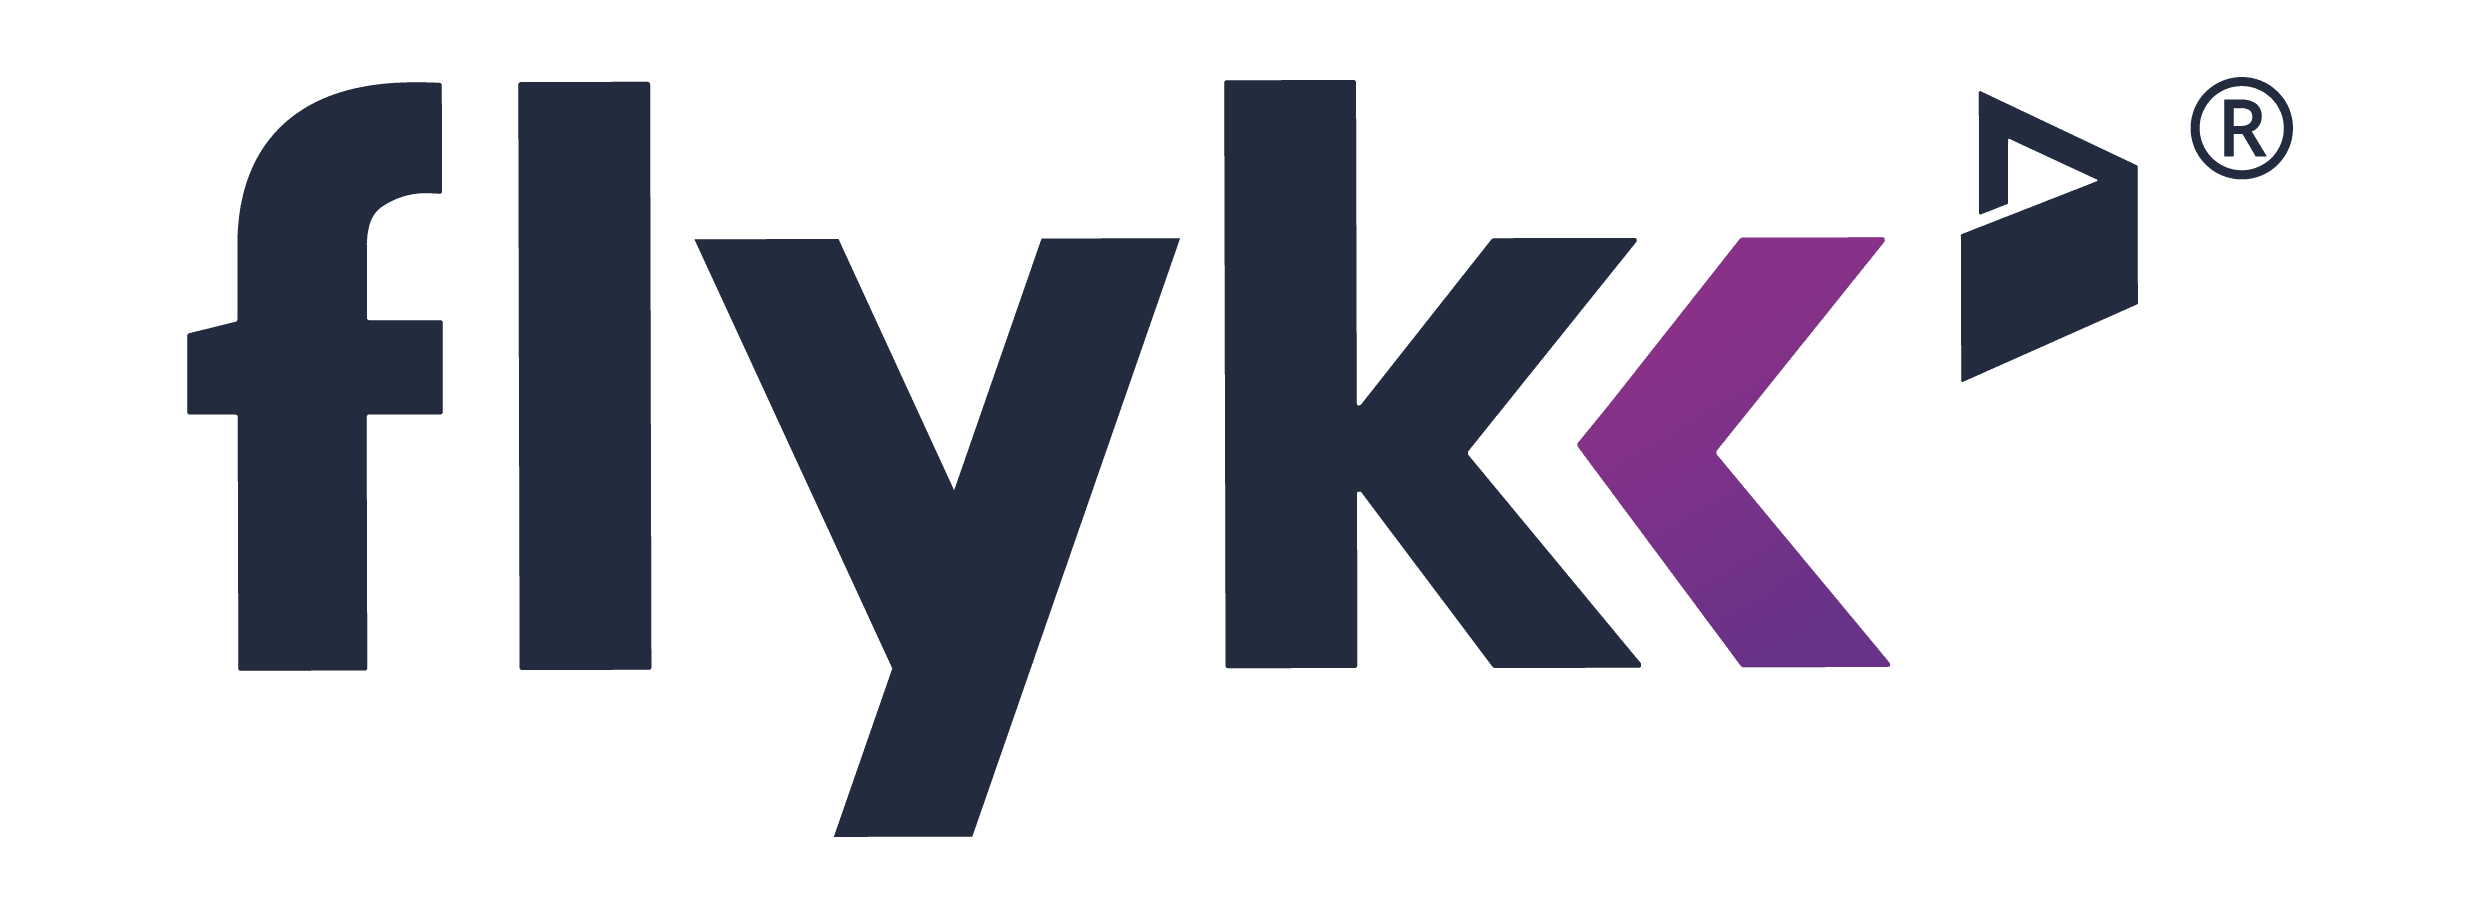 10 كازينوهات الإنترنت الأعلى تقييمًا التي تقبل Flykk